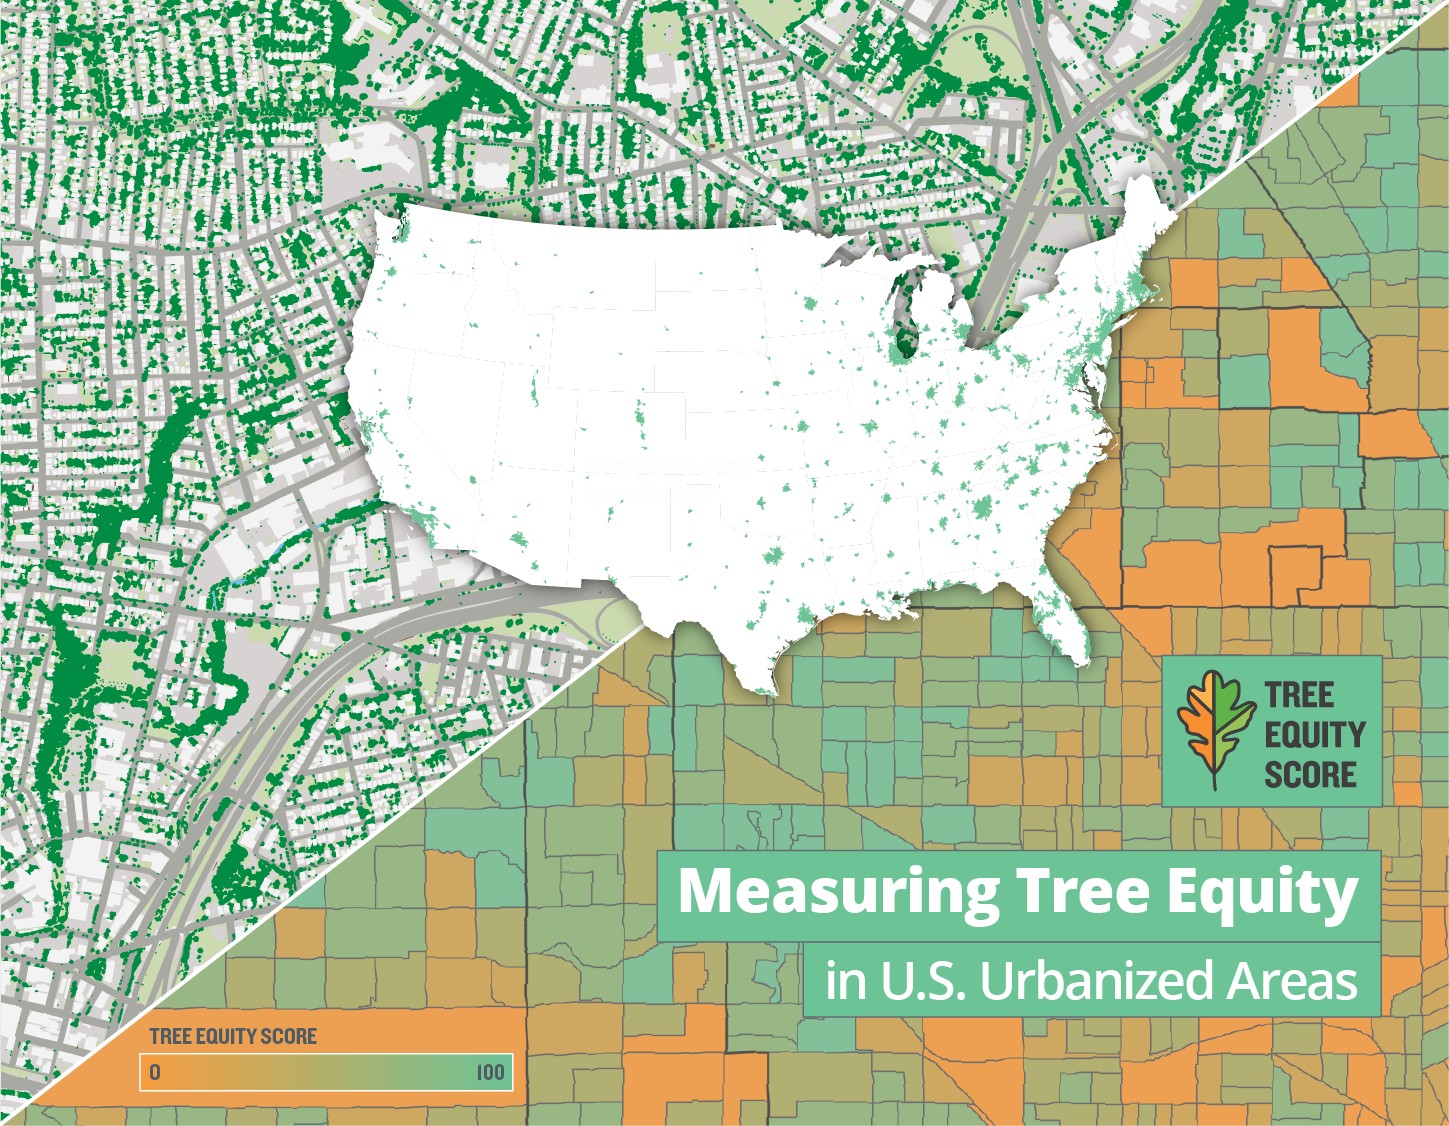 Tree Equity Score